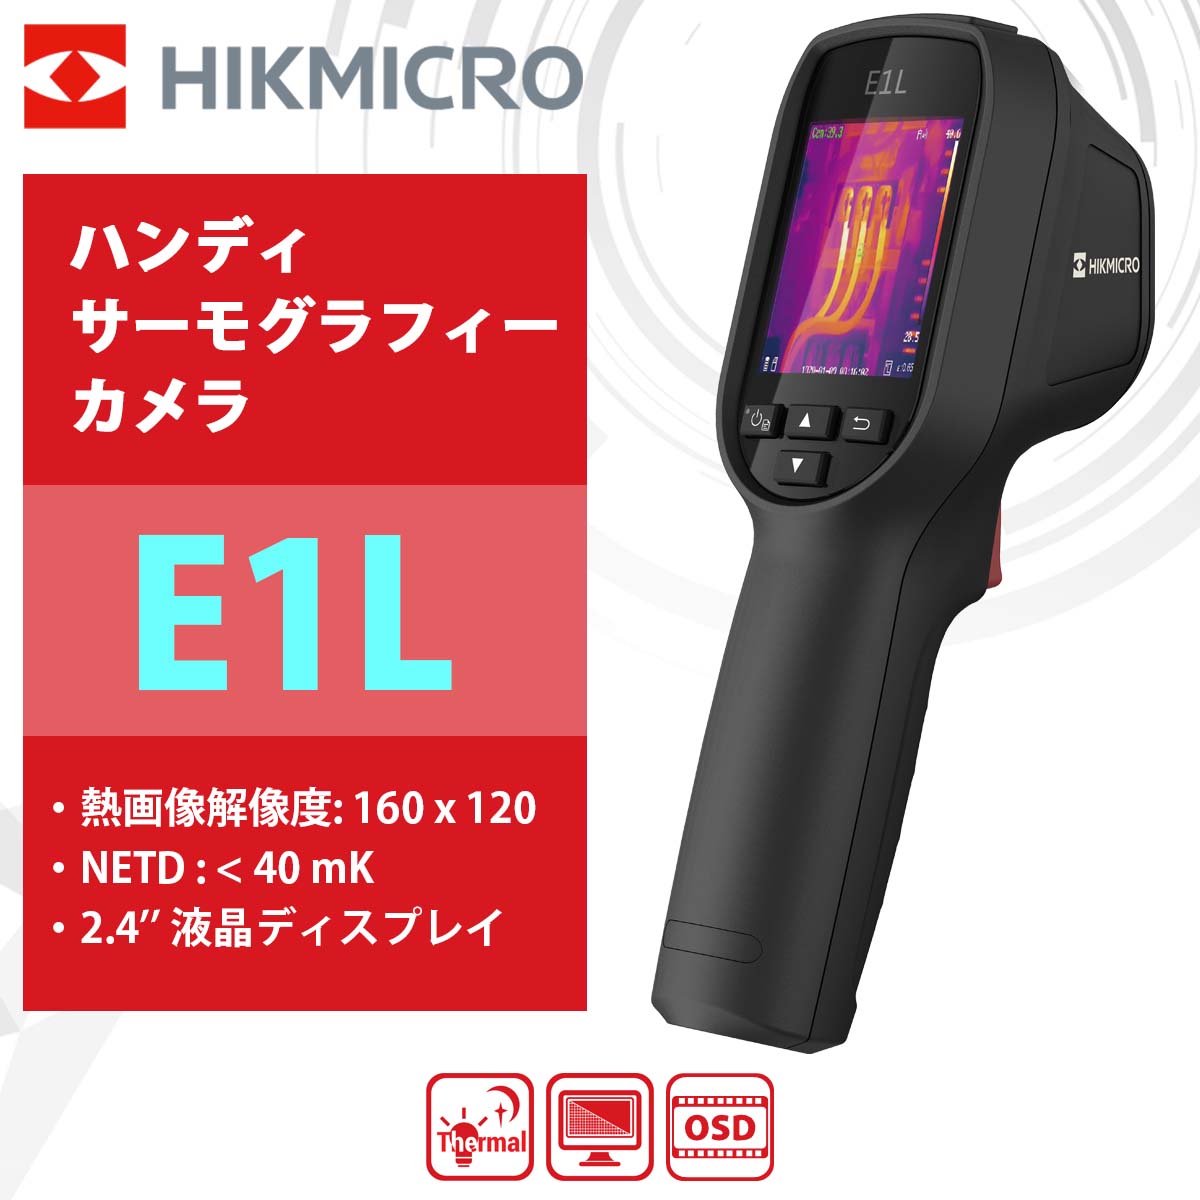 HIKMICRO ハンディサーモグラフィーカメラ E1L DIY・工具 | dermascope.com